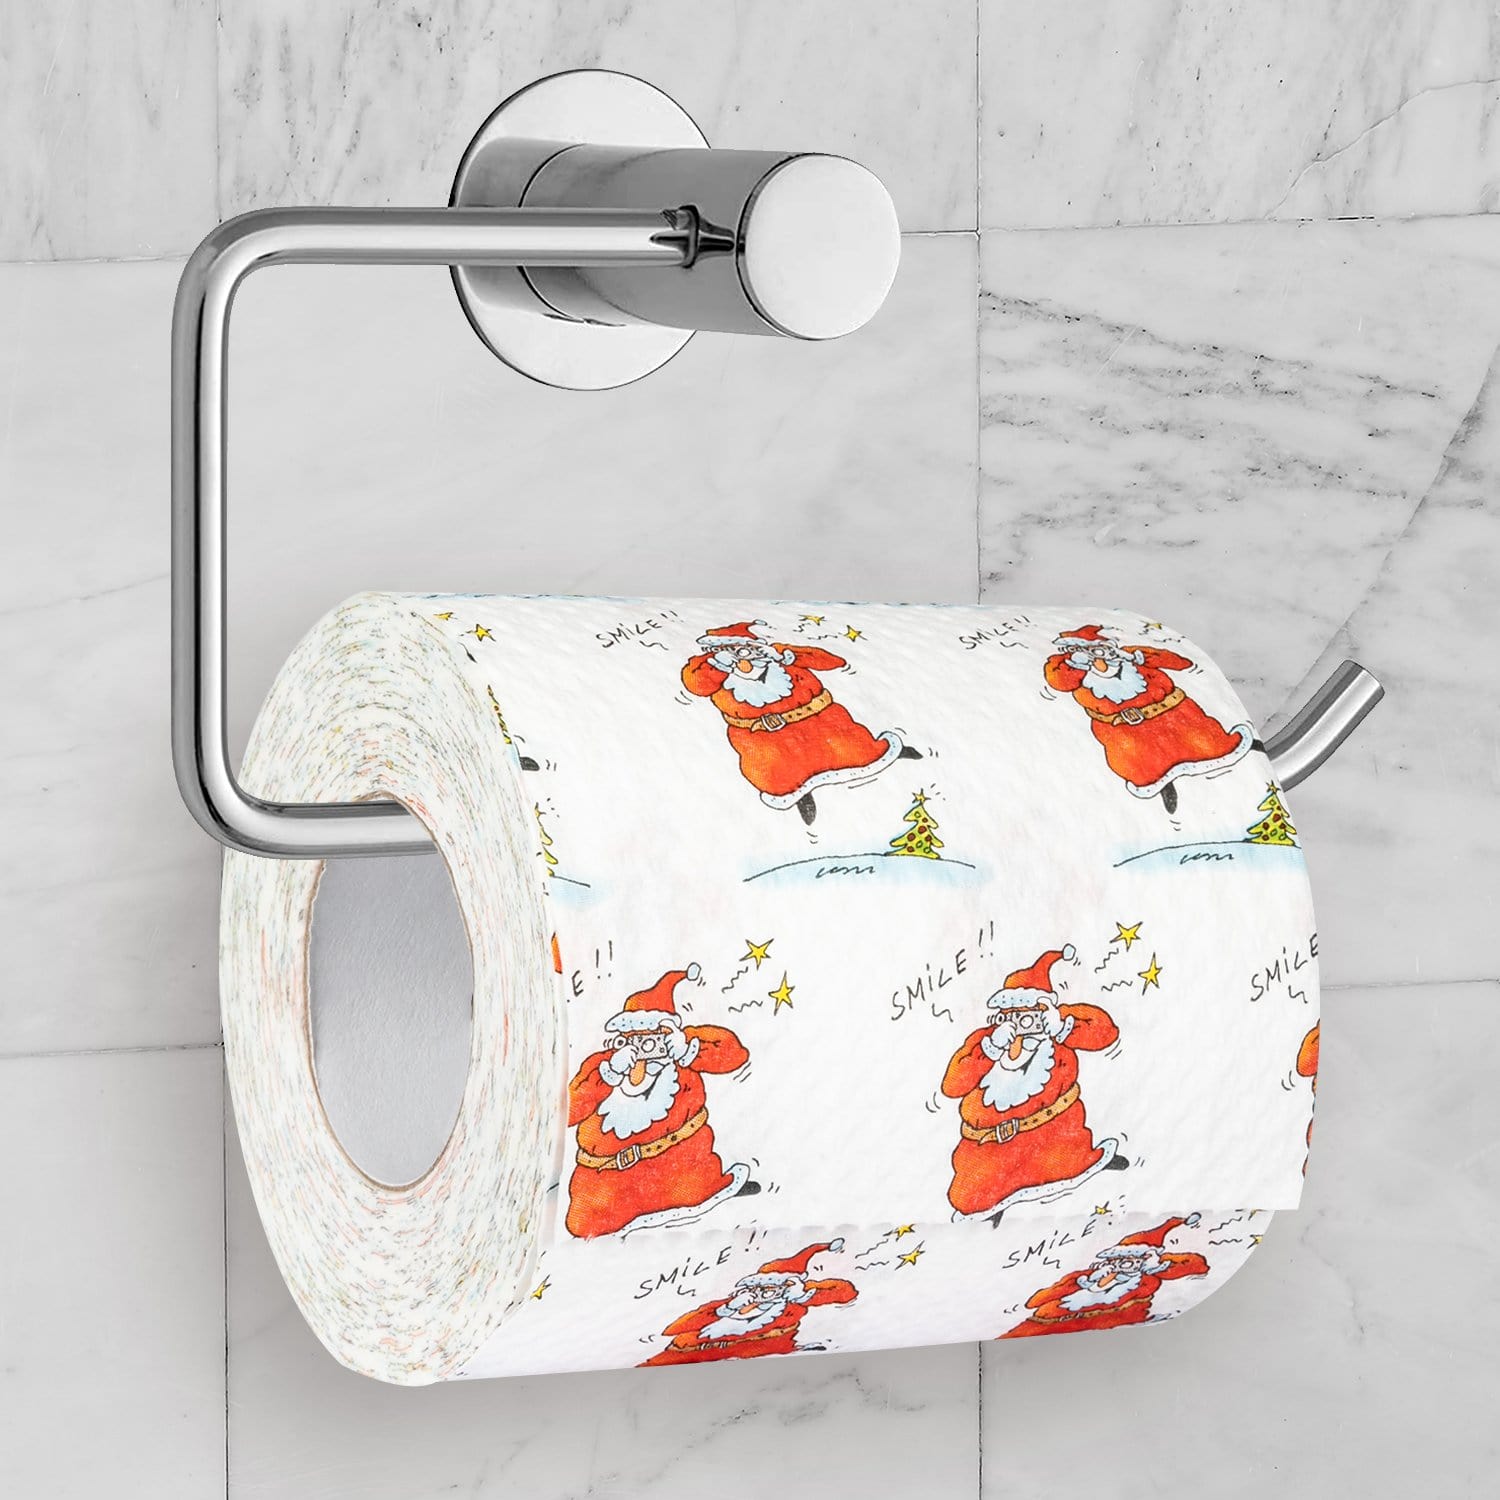 Toilettenpapier - Weihnachtsparty